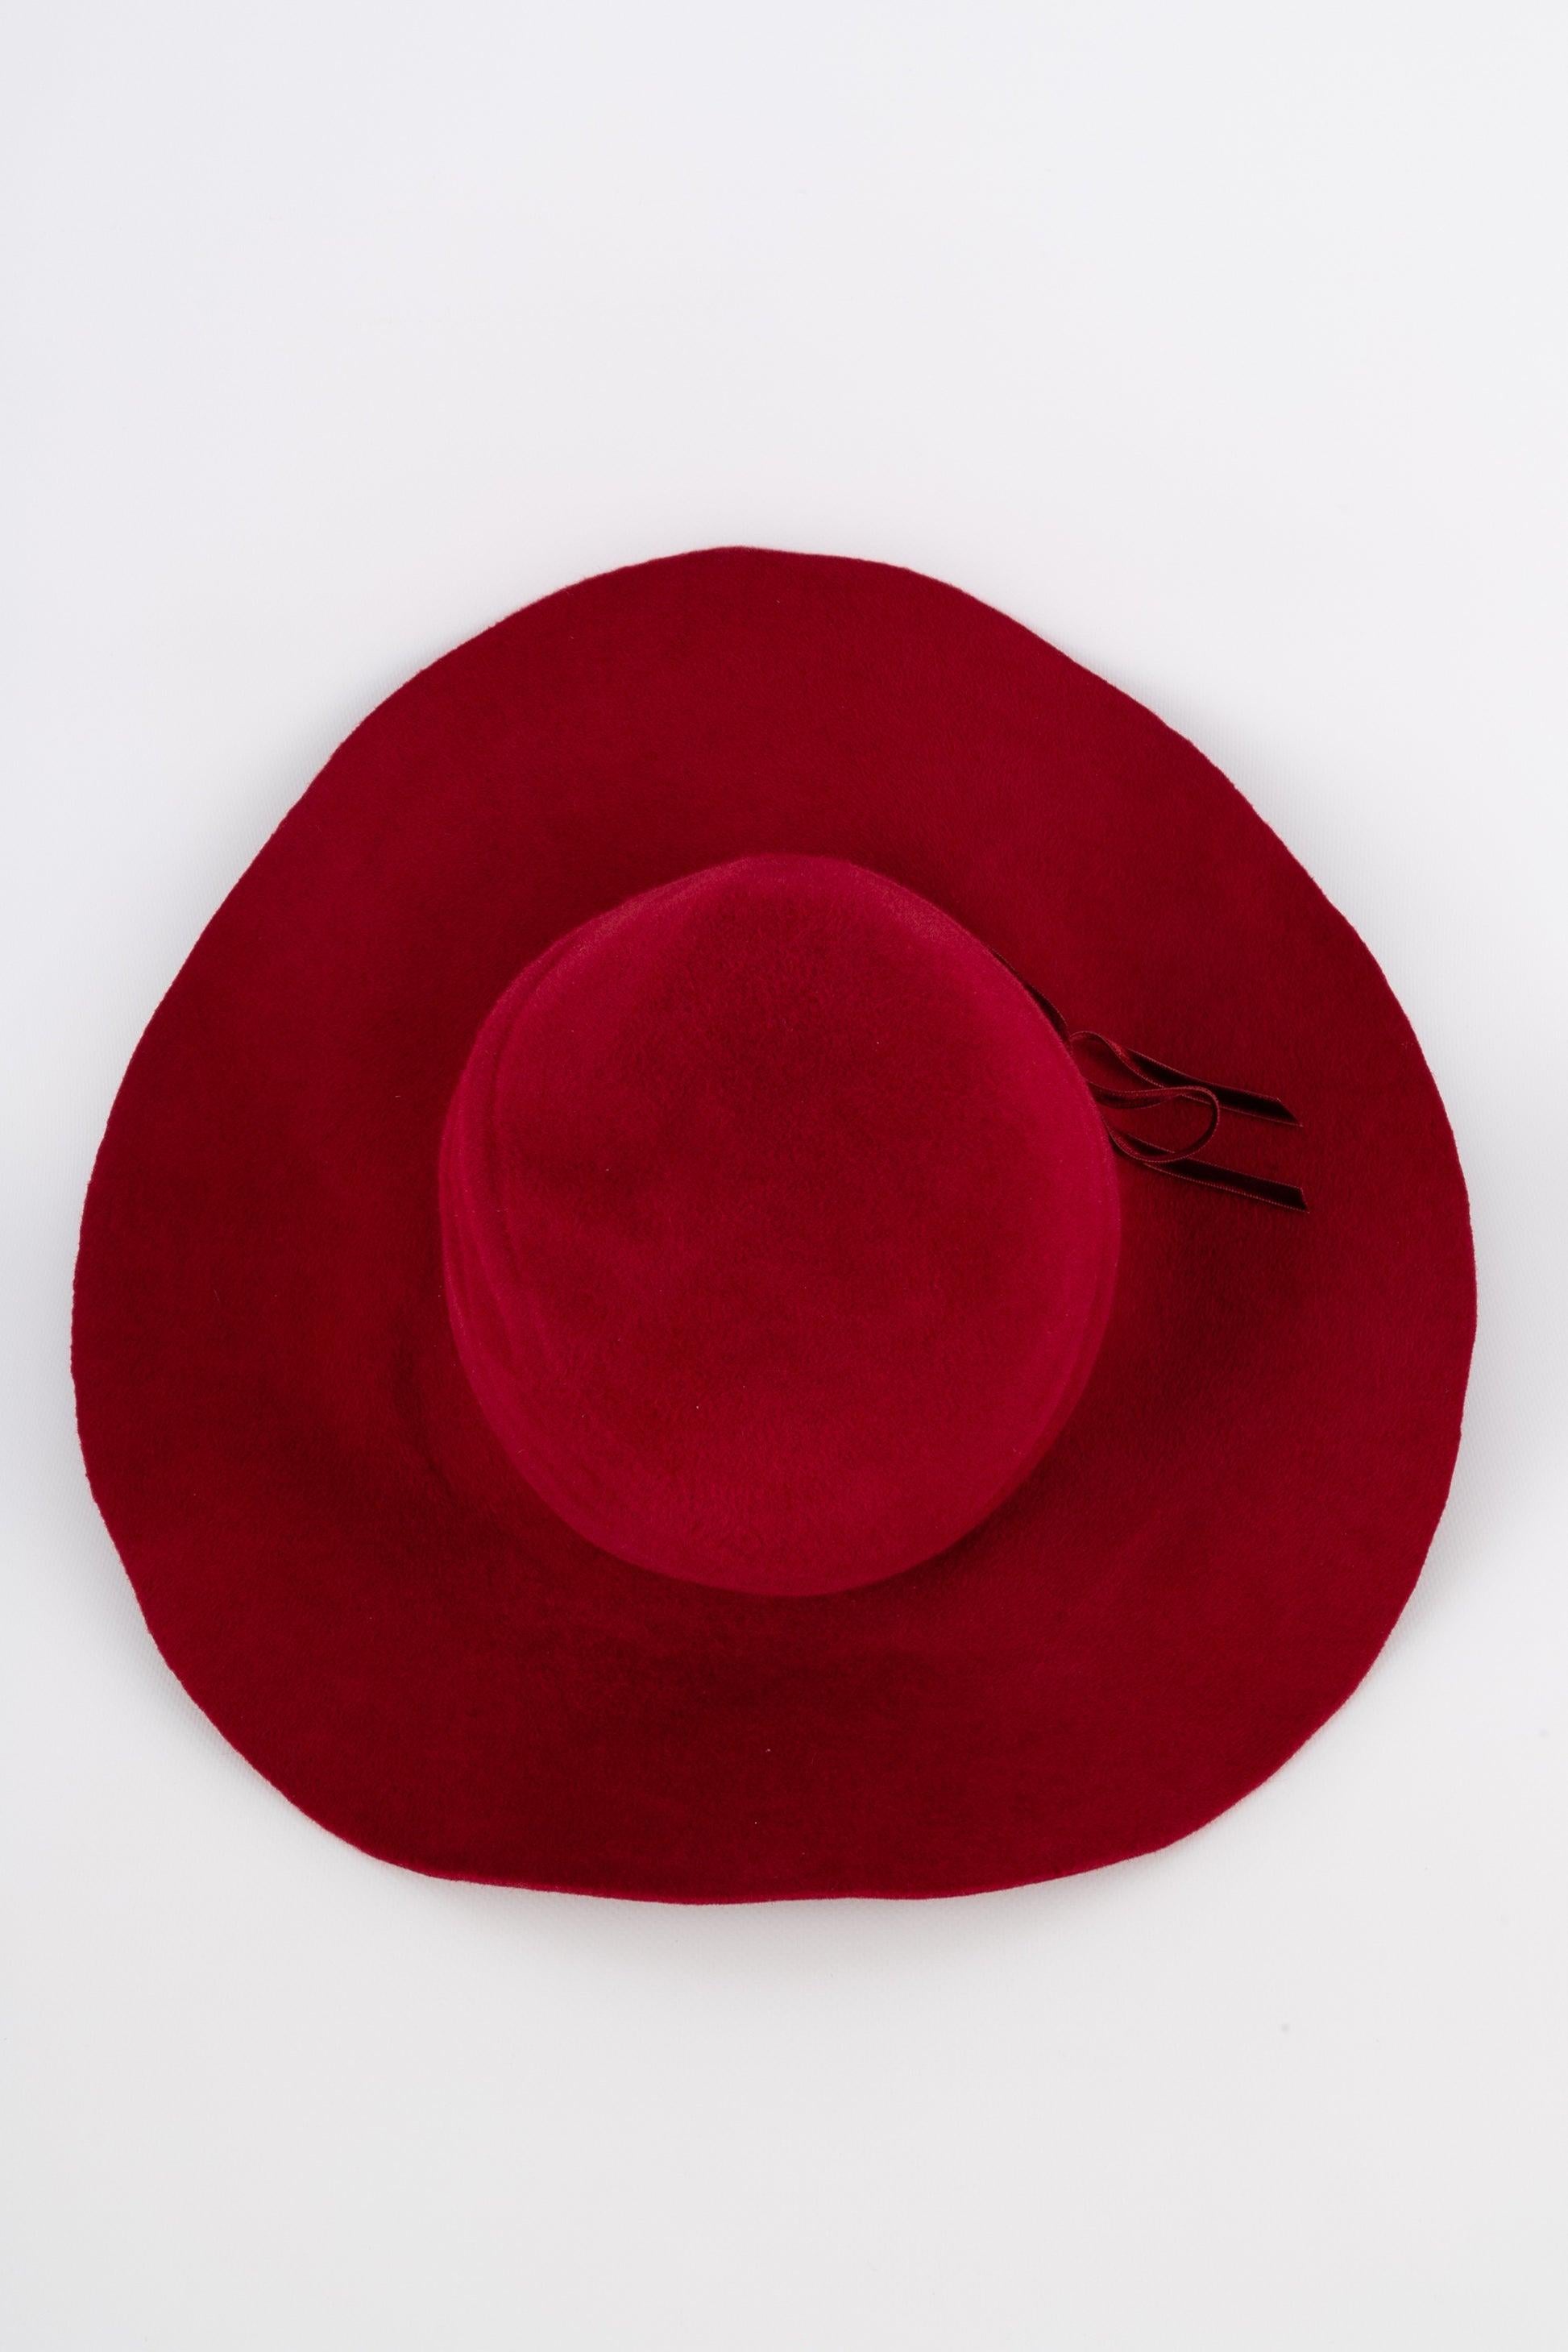 Marie Mercié Red Felt Hat For Sale 2